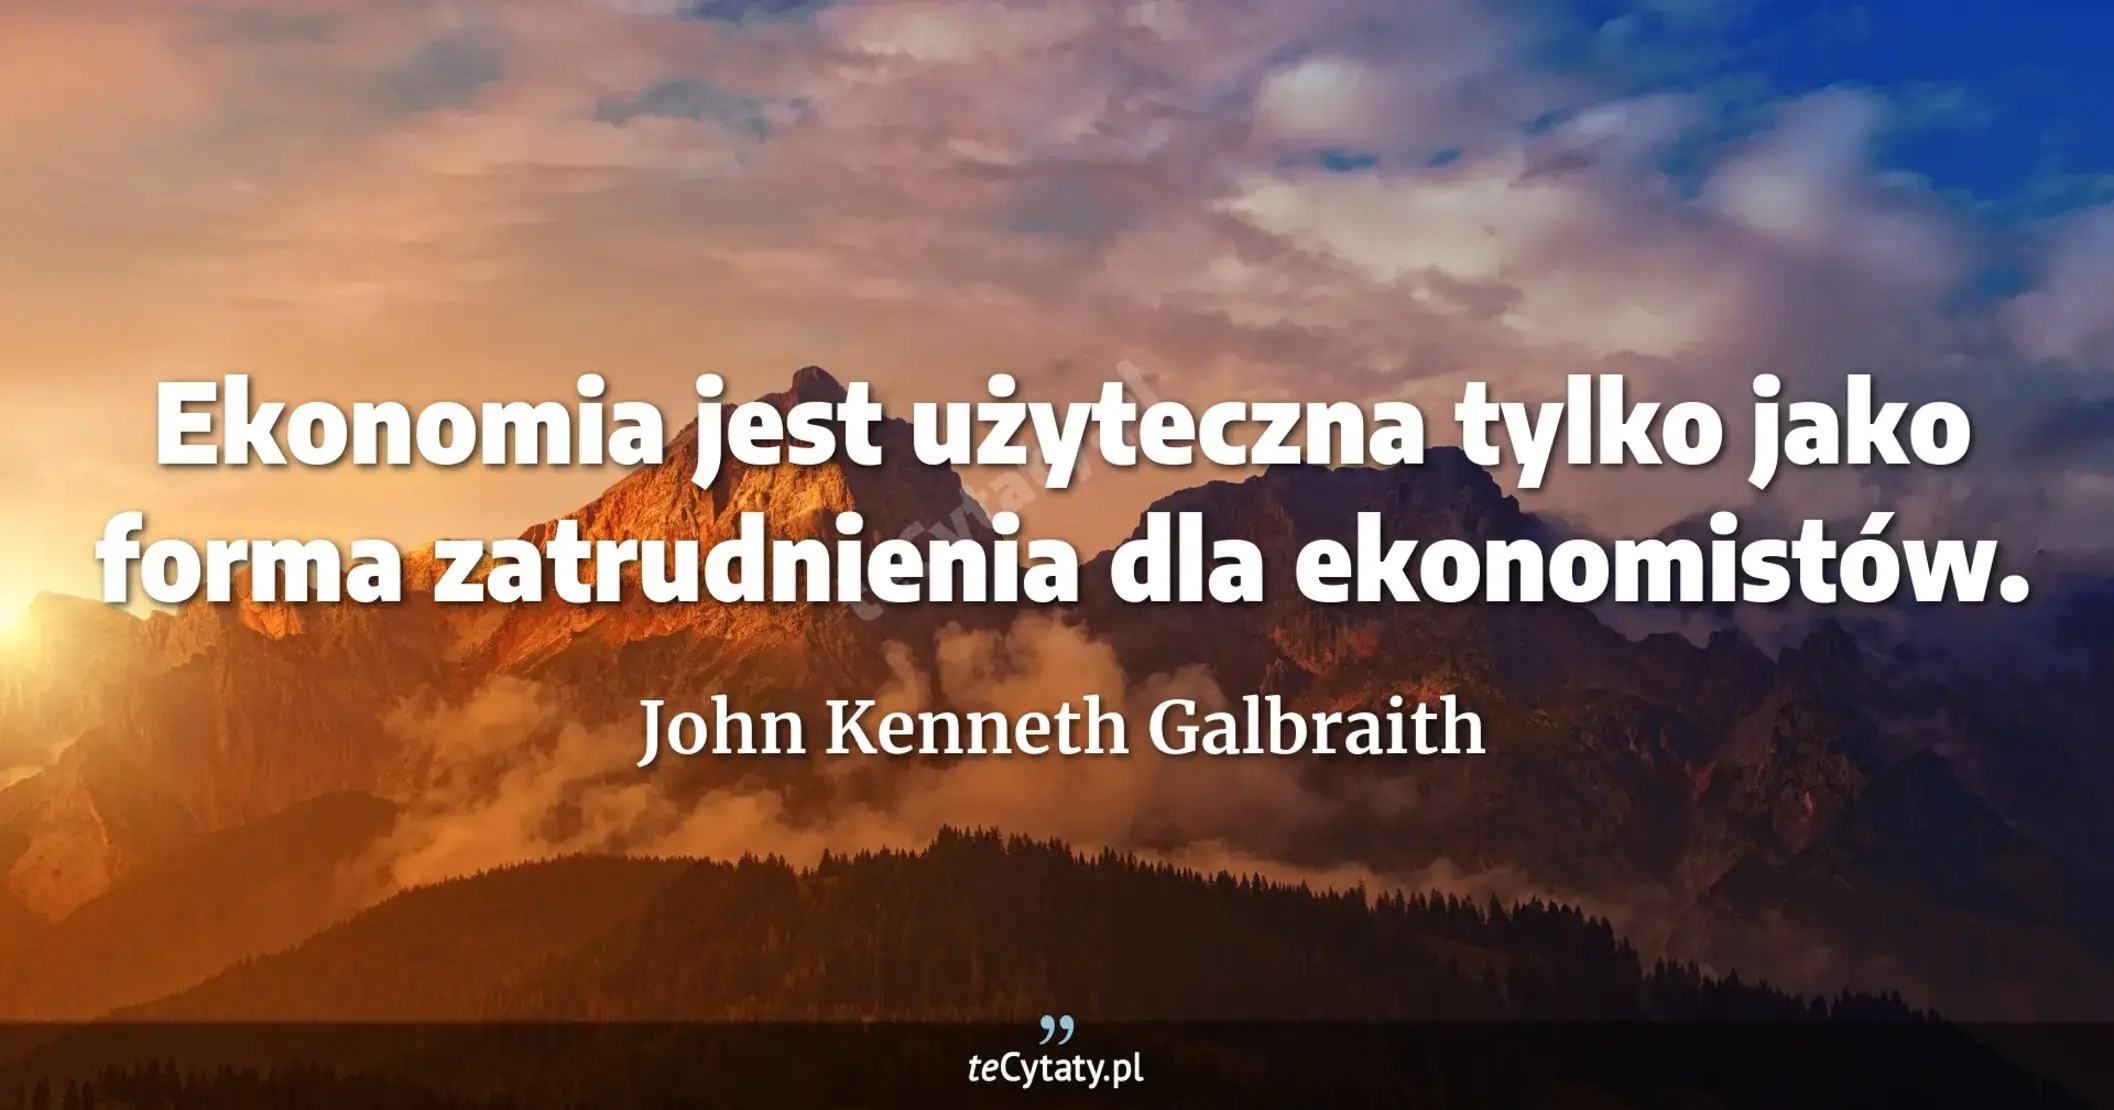 Ekonomia jest użyteczna tylko jako forma zatrudnienia dla ekonomistów. - John Kenneth Galbraith